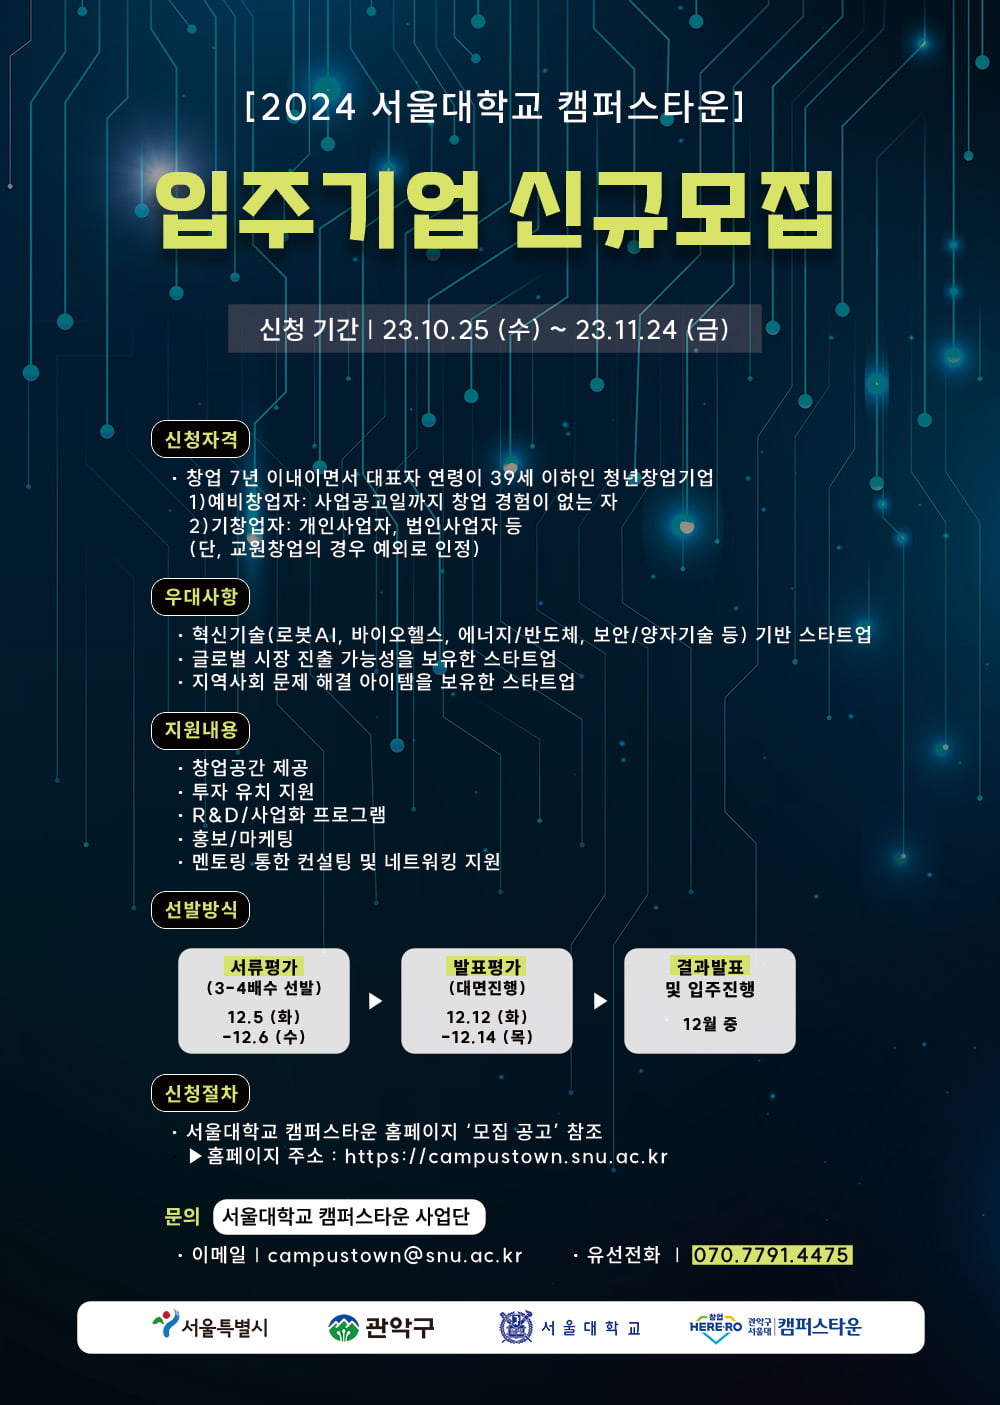 [2023 서울대학교 캠퍼스타운 스타트업 CEO] 뇌지컬(NOIsical) 분석 및 트레이닝 서비스를 개발하는 스타트업 ‘노이랩’